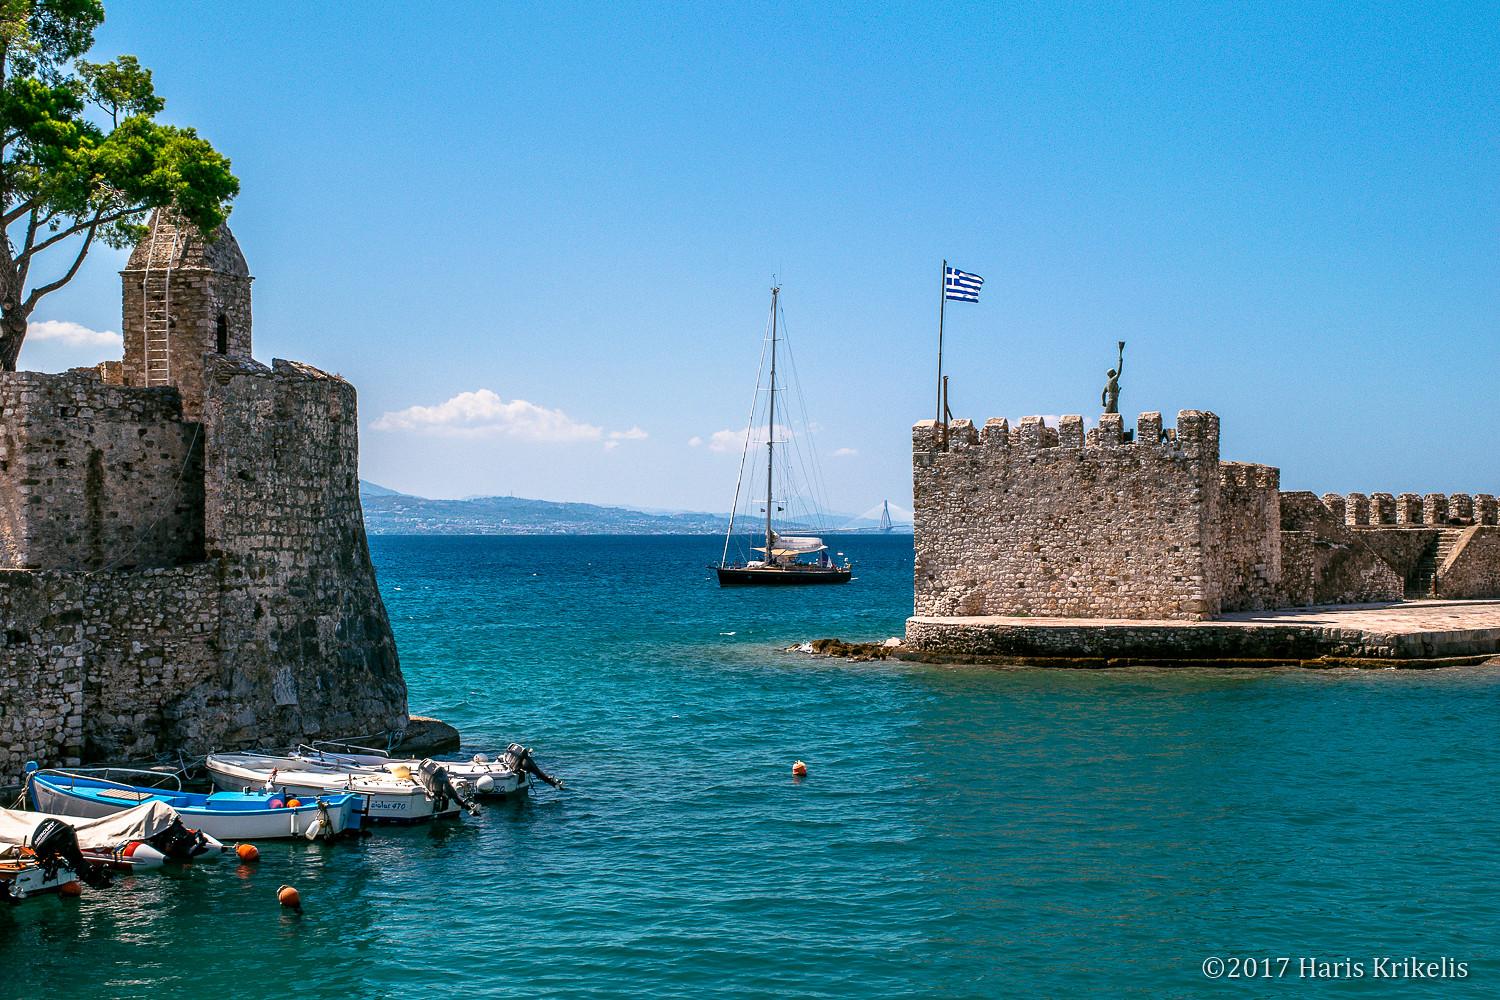 Πανοραμική φωτογραφία από το κάστρο με το λιμάνι και τον οικισμό ναυπακτοσ αξιοθεατα